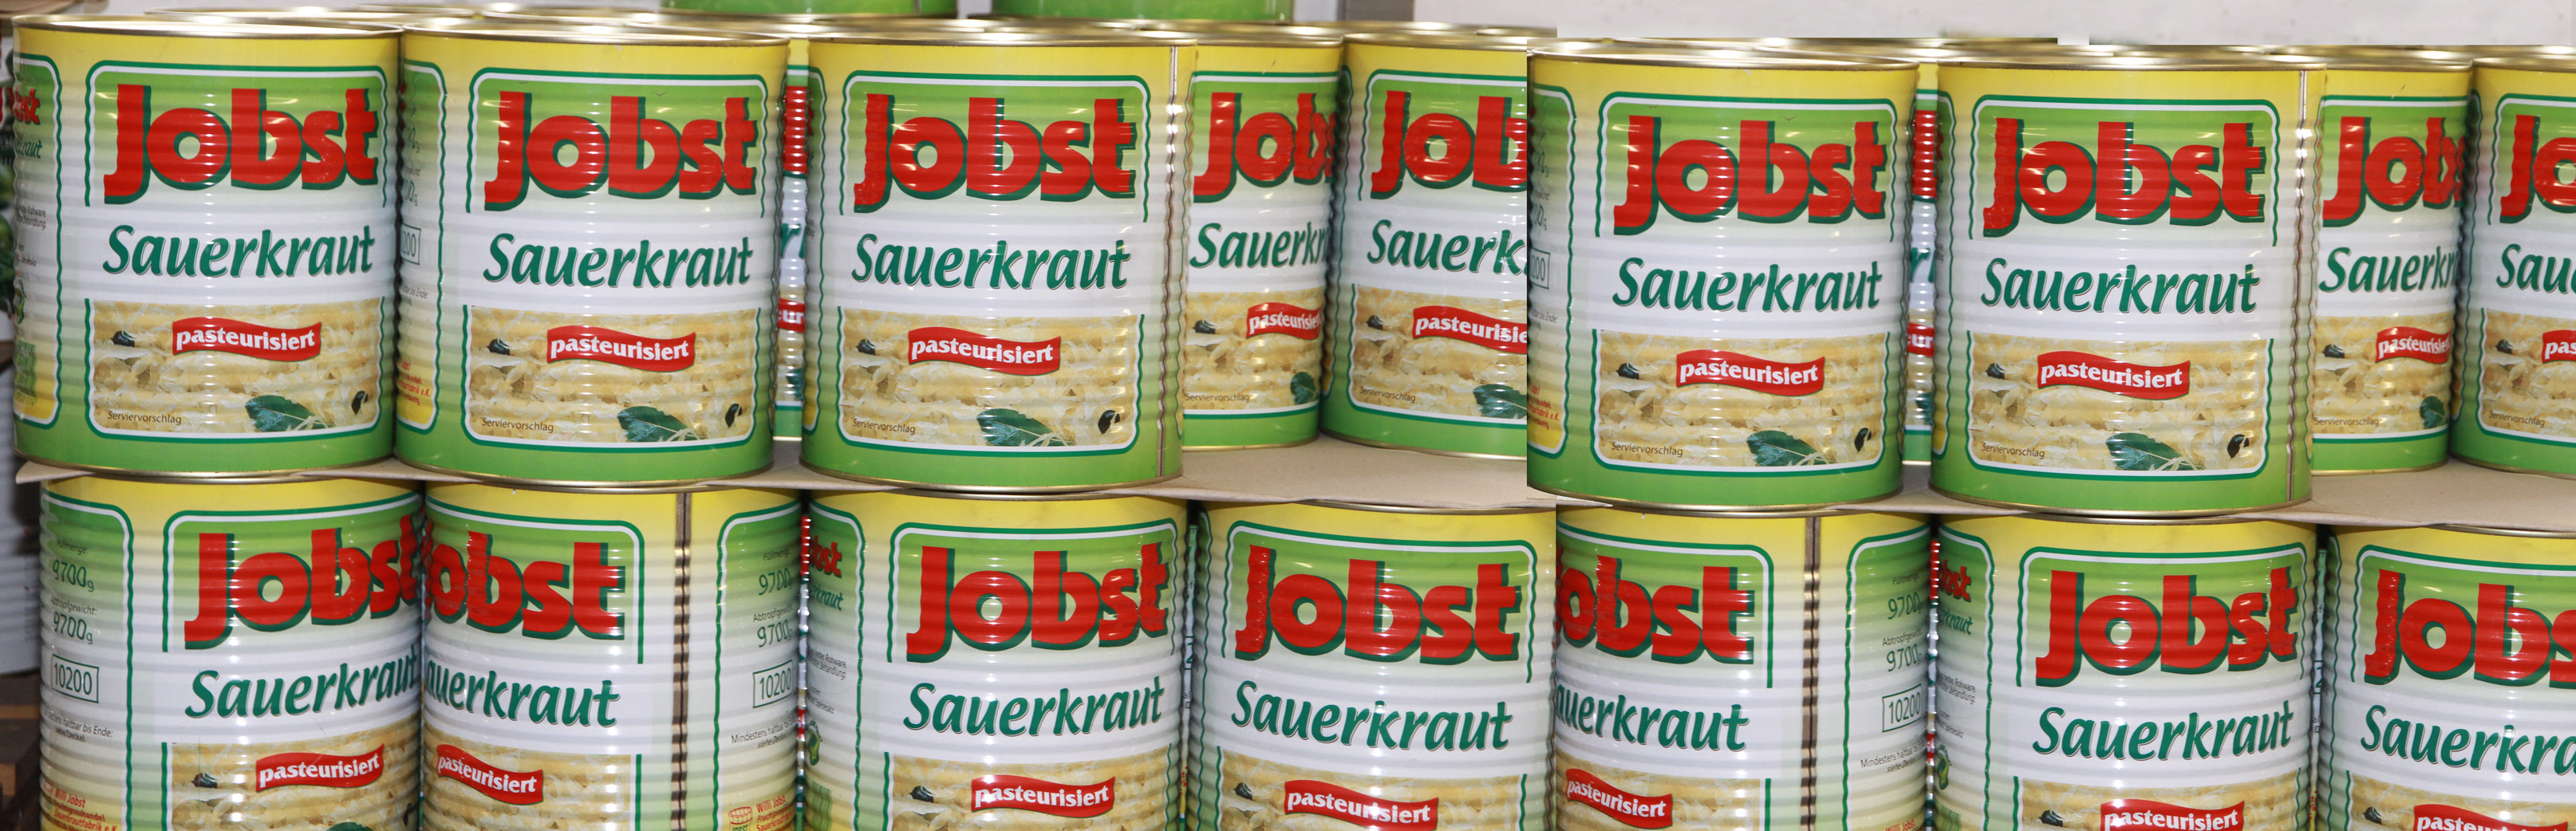 Sauerkraut von Jobst Sauerkrautfabrik